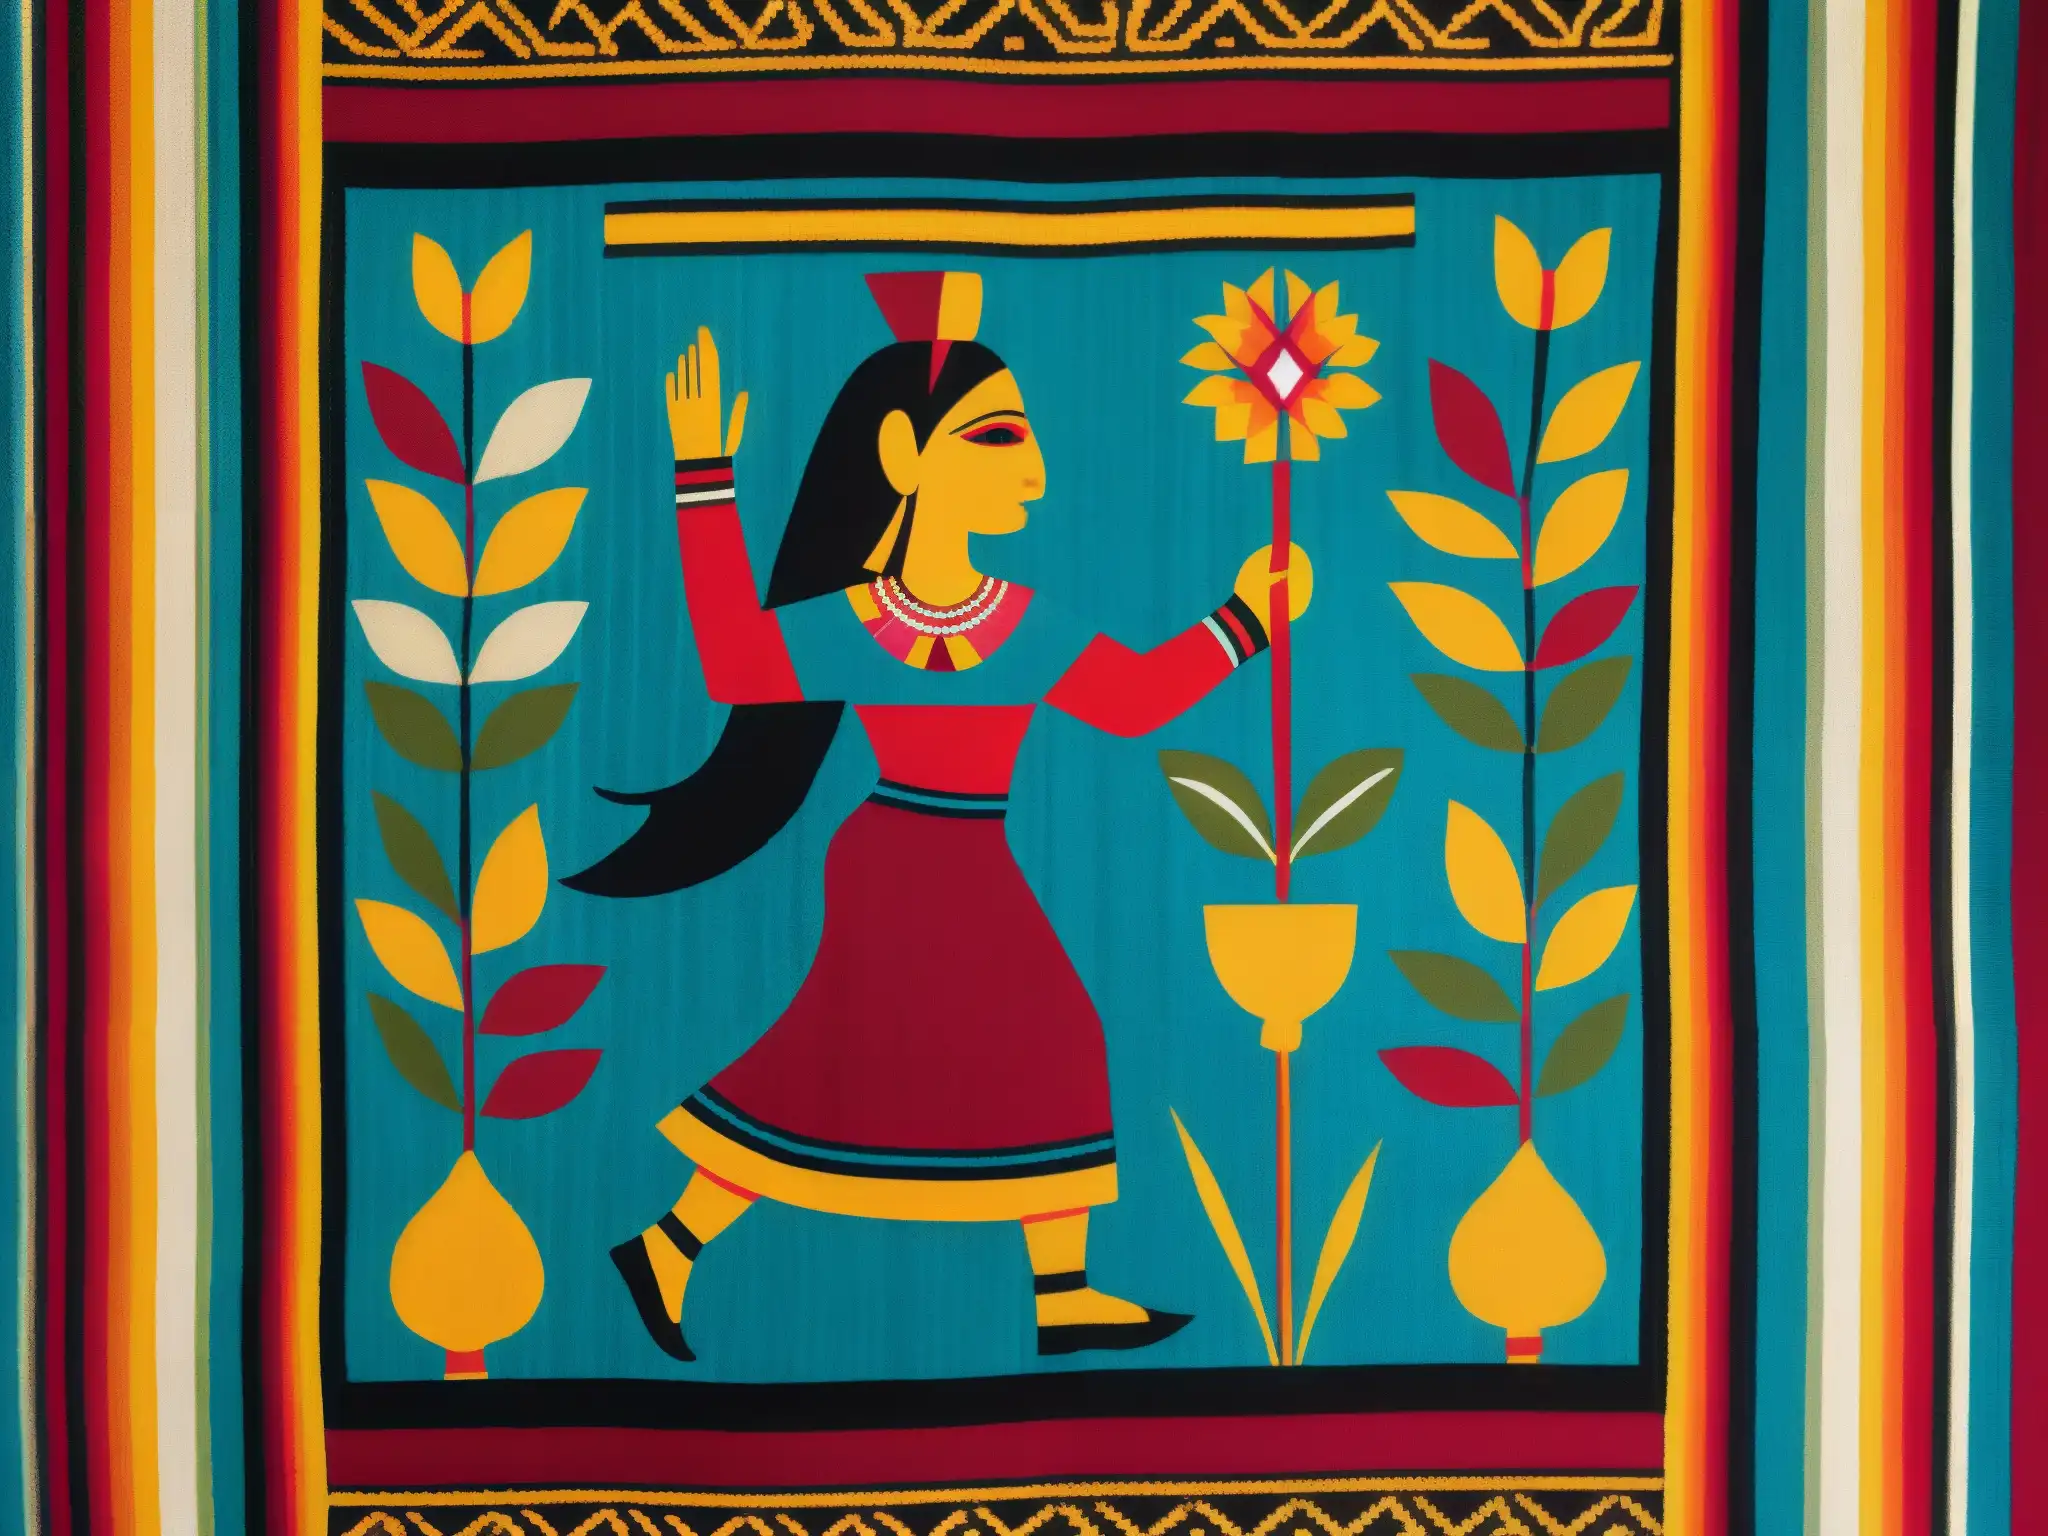 Detalle colorido de textil andino representa a Pachamama, deidad Andina de la tierra y fertilidad, con símbolos de abundancia y belleza natural